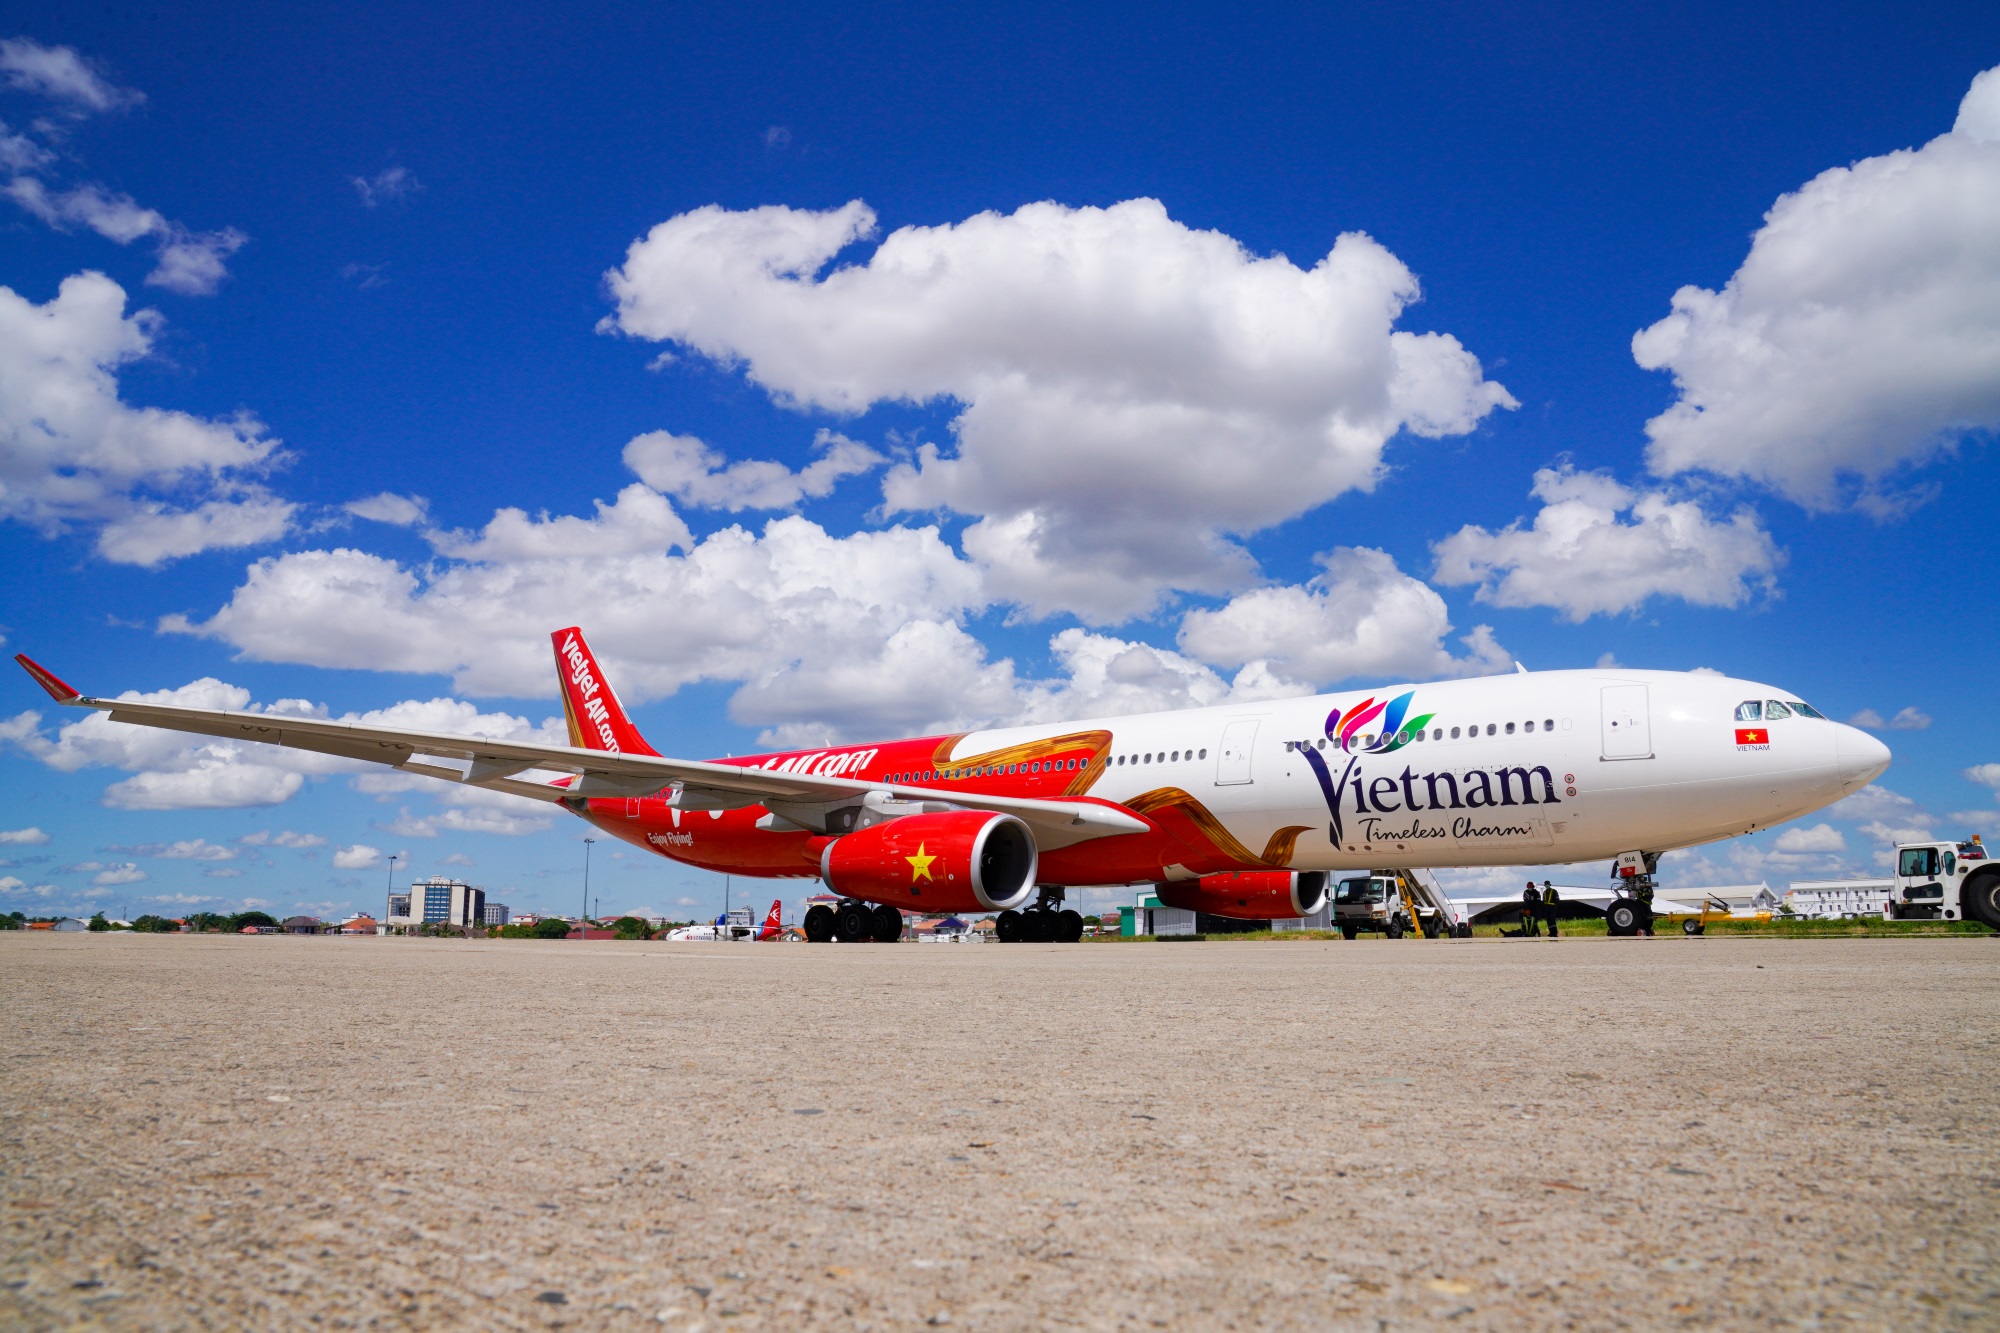 Thoả sức khám phá Australia cùng Vietjet với 48 chuyến bay/ tuần đến Brisbane, Melbourne, Sydney, Perth, Adelaide - Ảnh 3.